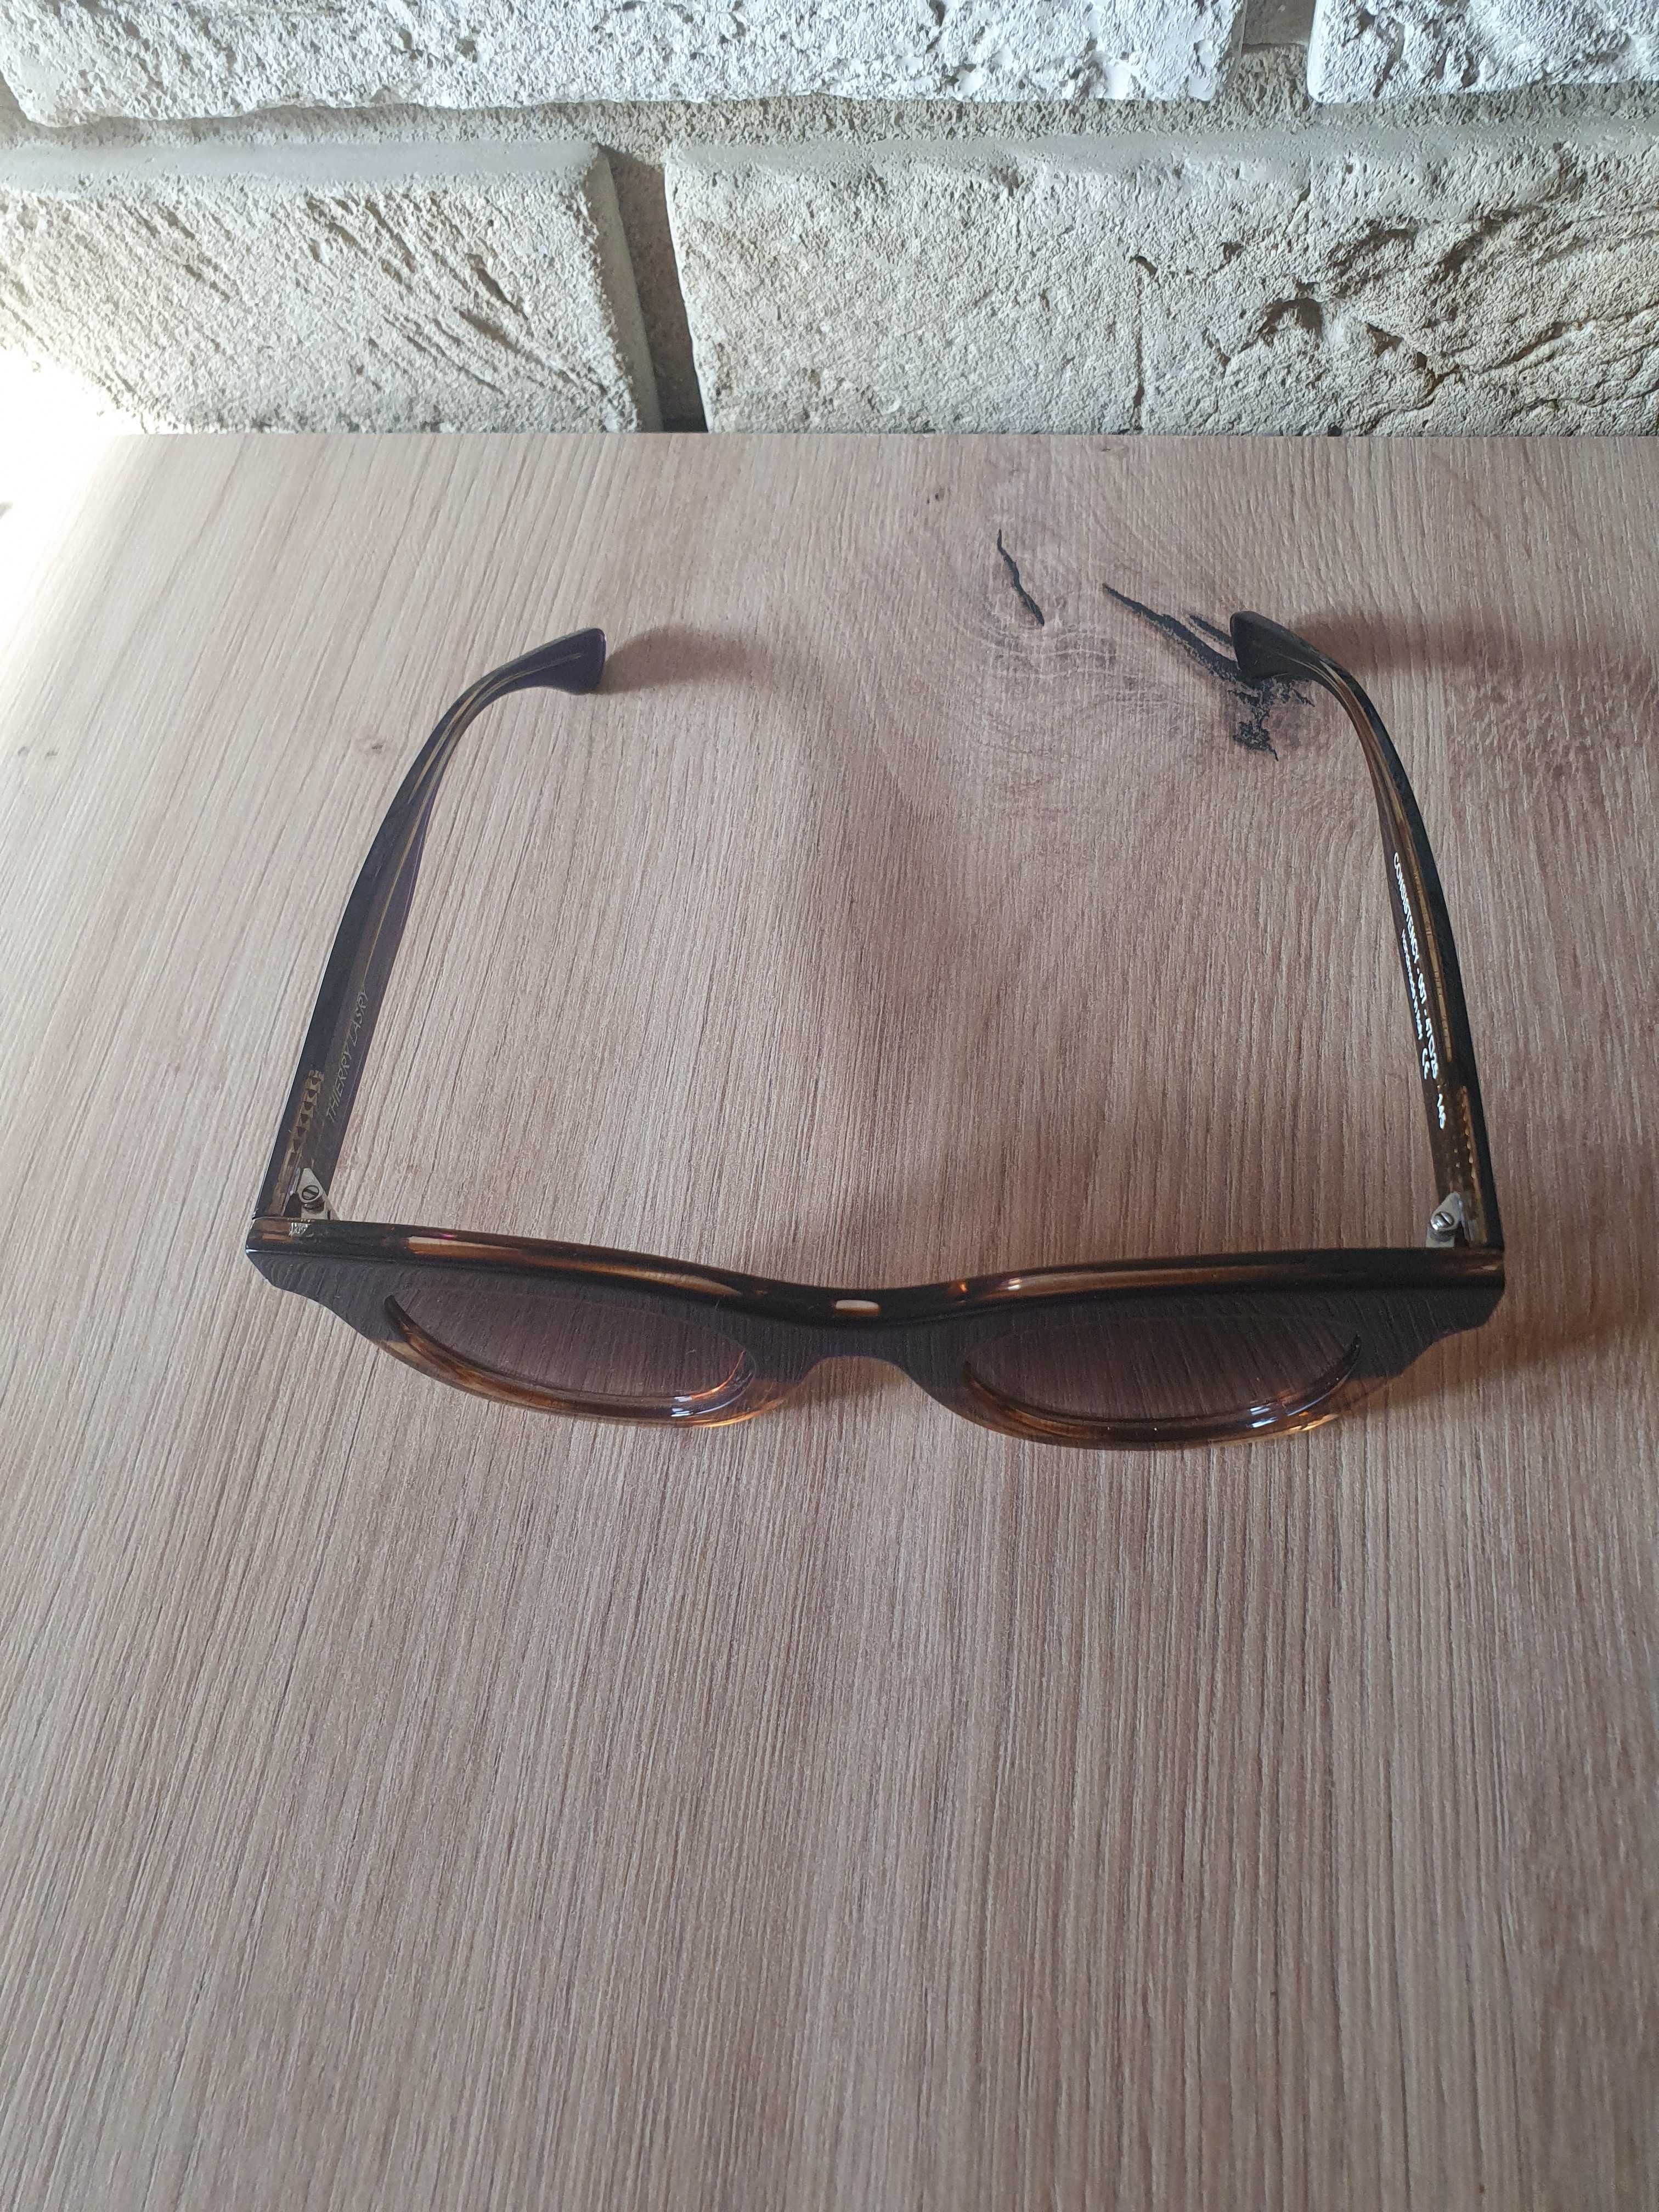 Okulary przeciwsłoneczne Thierry Lasry